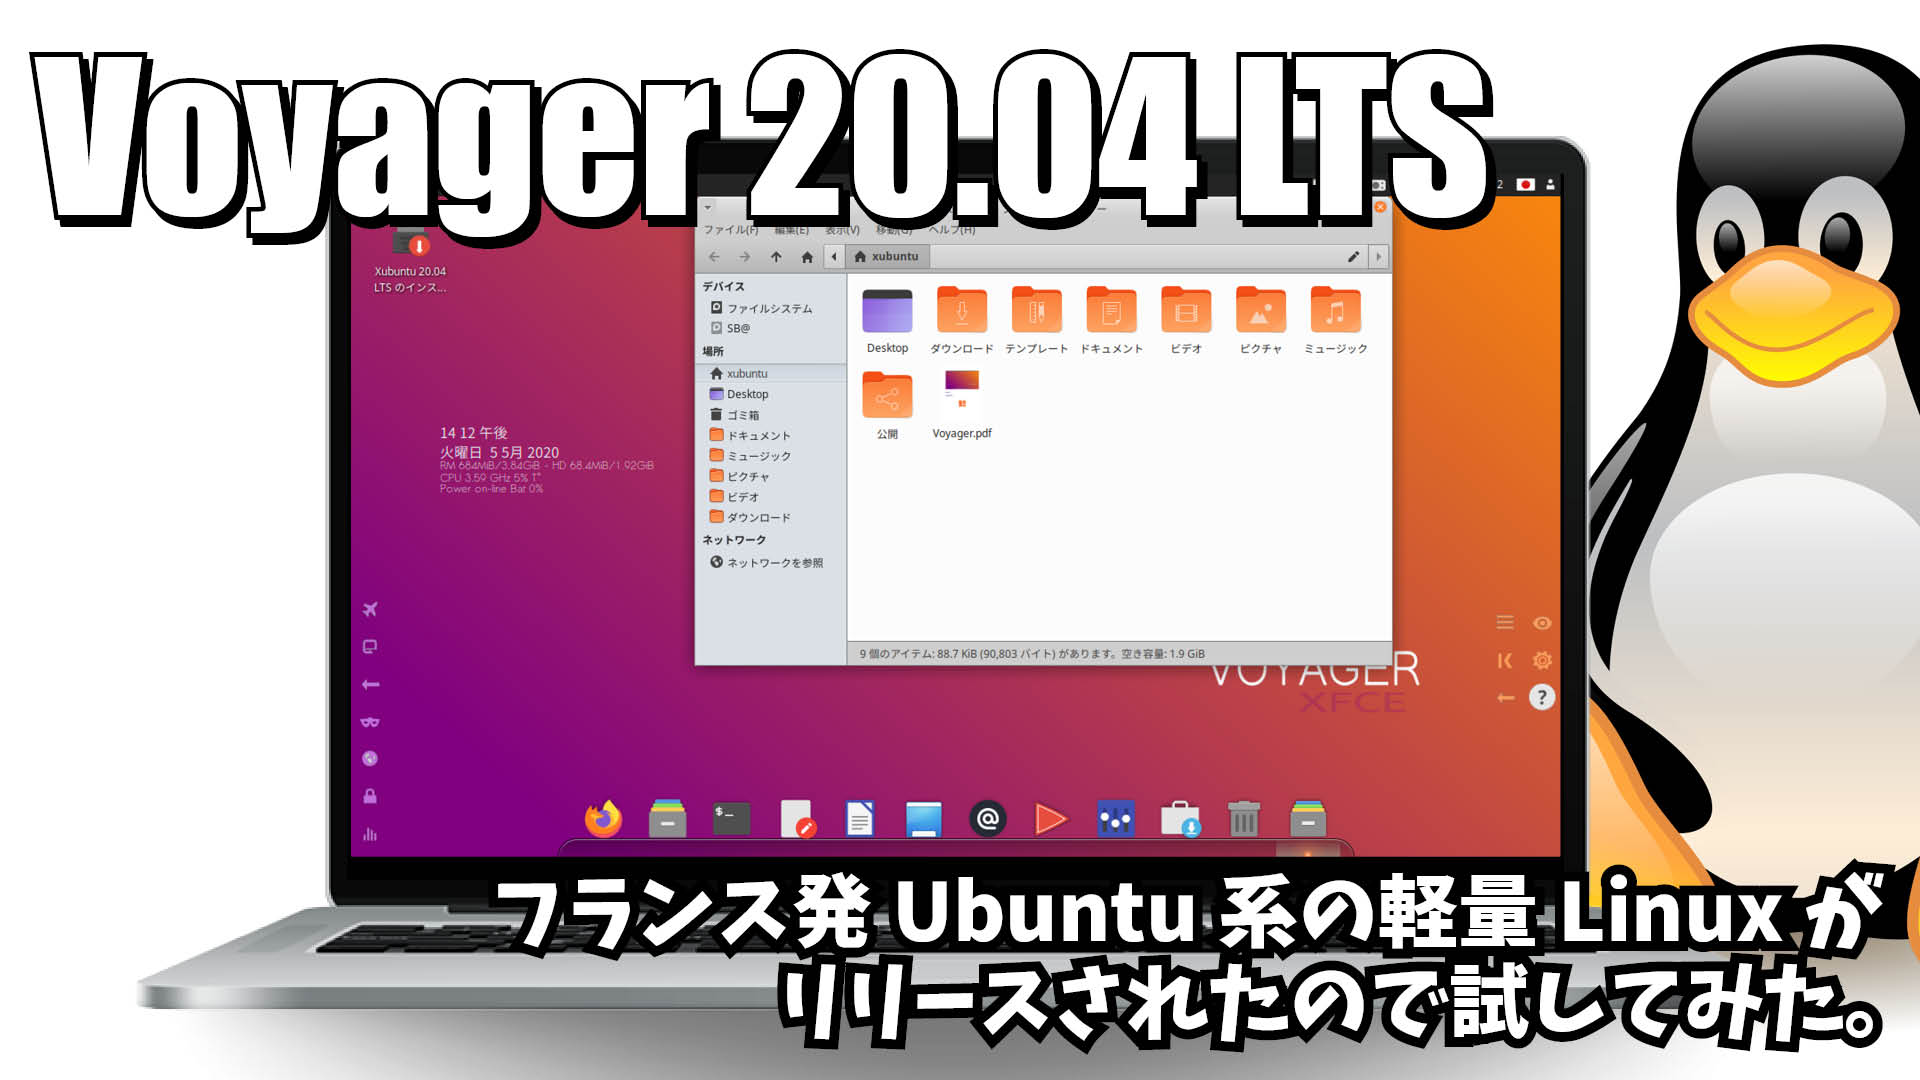 Voyager 20.04 LTS: フランス発Ubuntu系の軽量Linuxがリリースされたので試してみた。